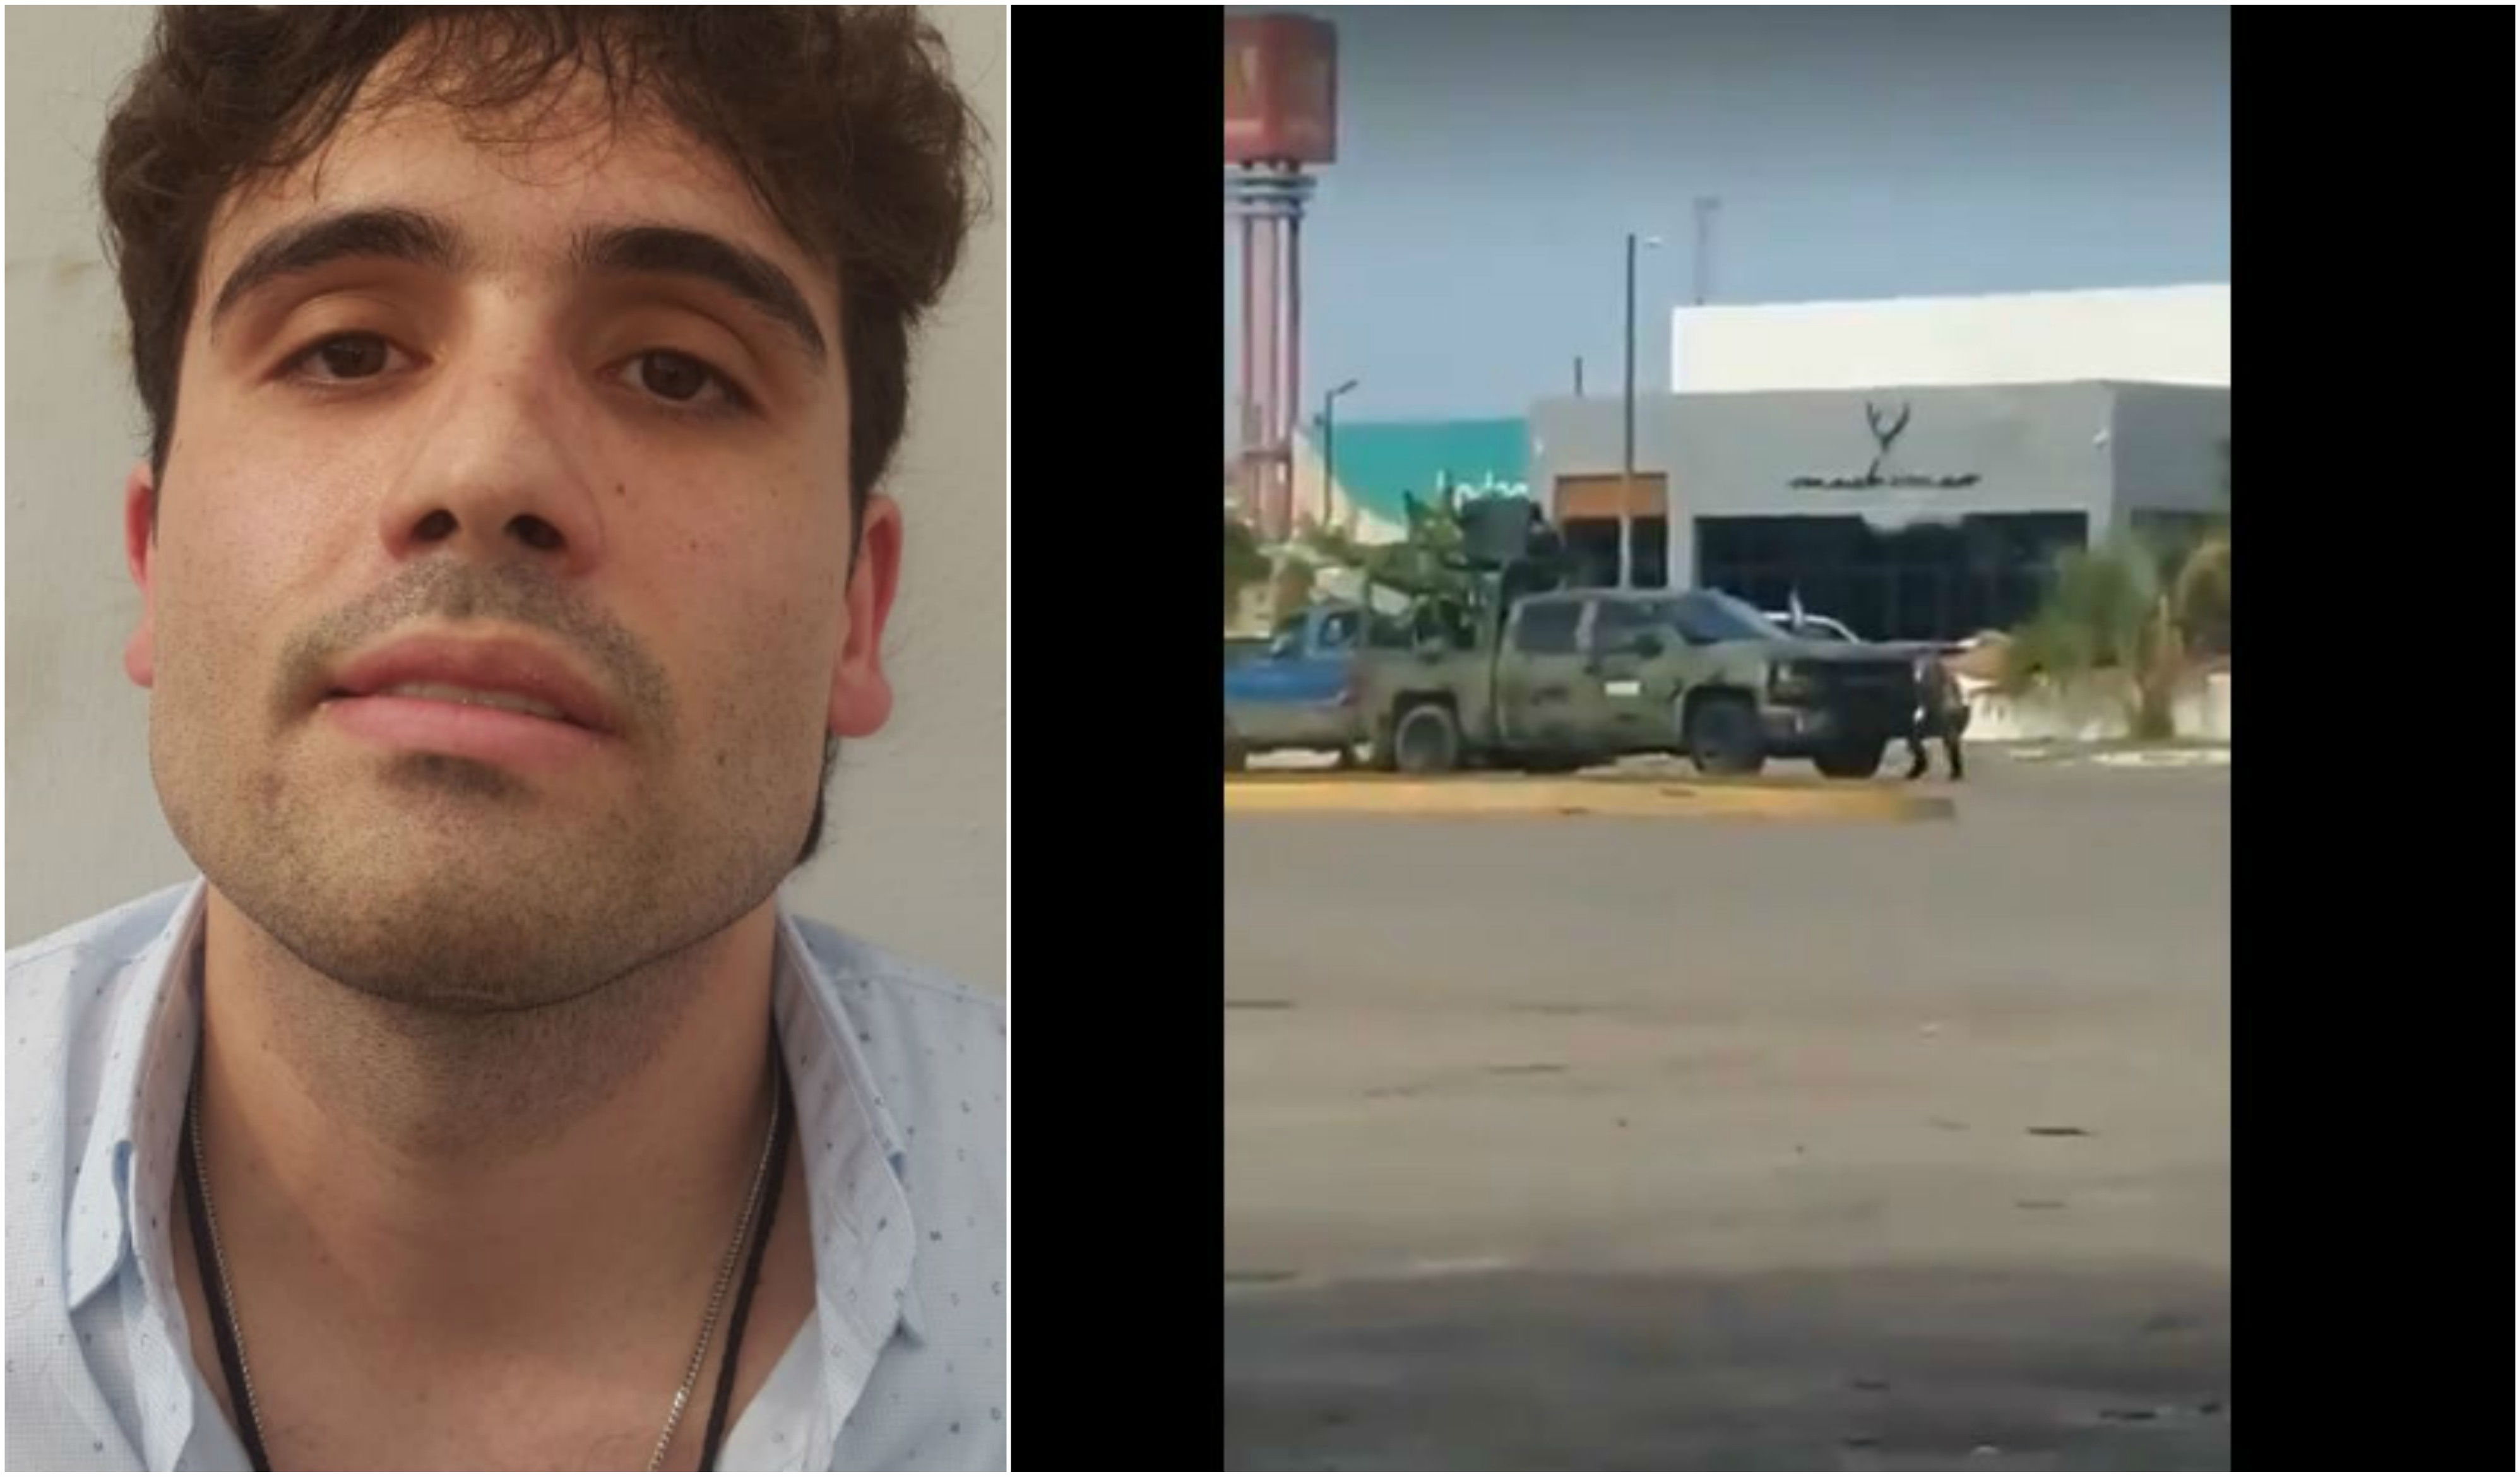 Diversas balaceras han ocurrido hoy en Culiacán, Sinaloa, debido a la detención de Ovidio Guzmán López, Hijo de “El Chapo” Guzmán